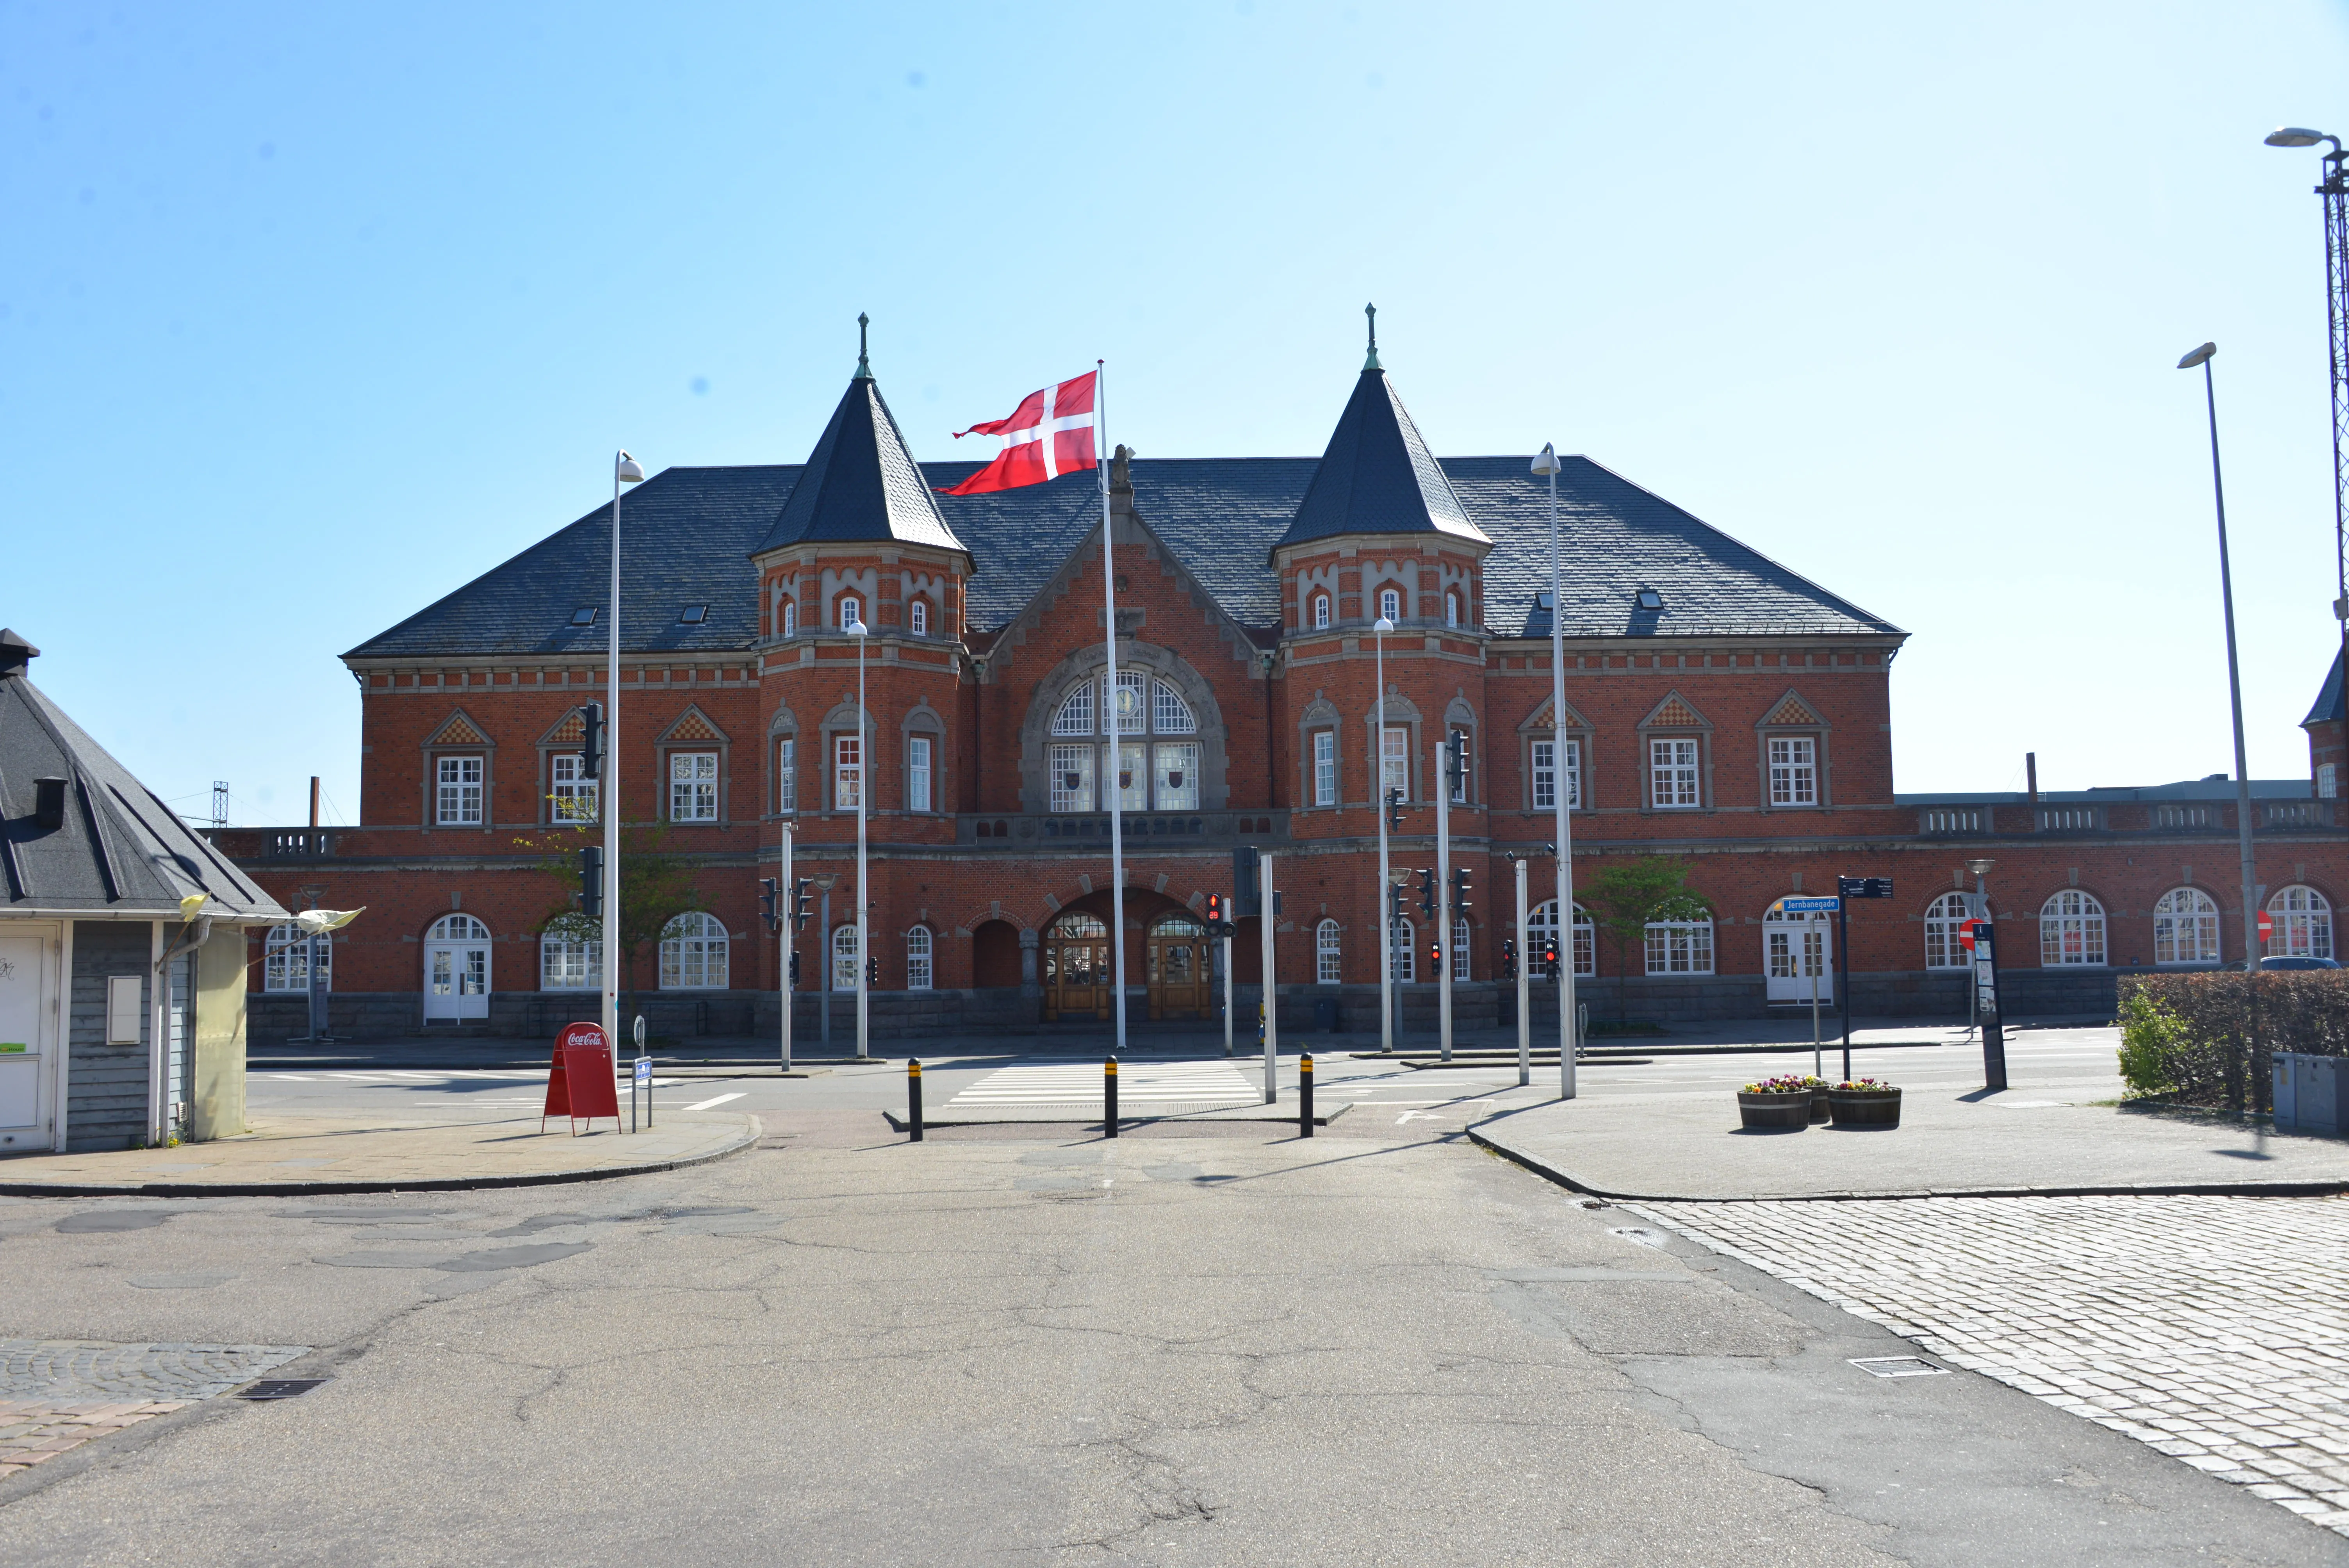 Billede af Esbjerg Station.